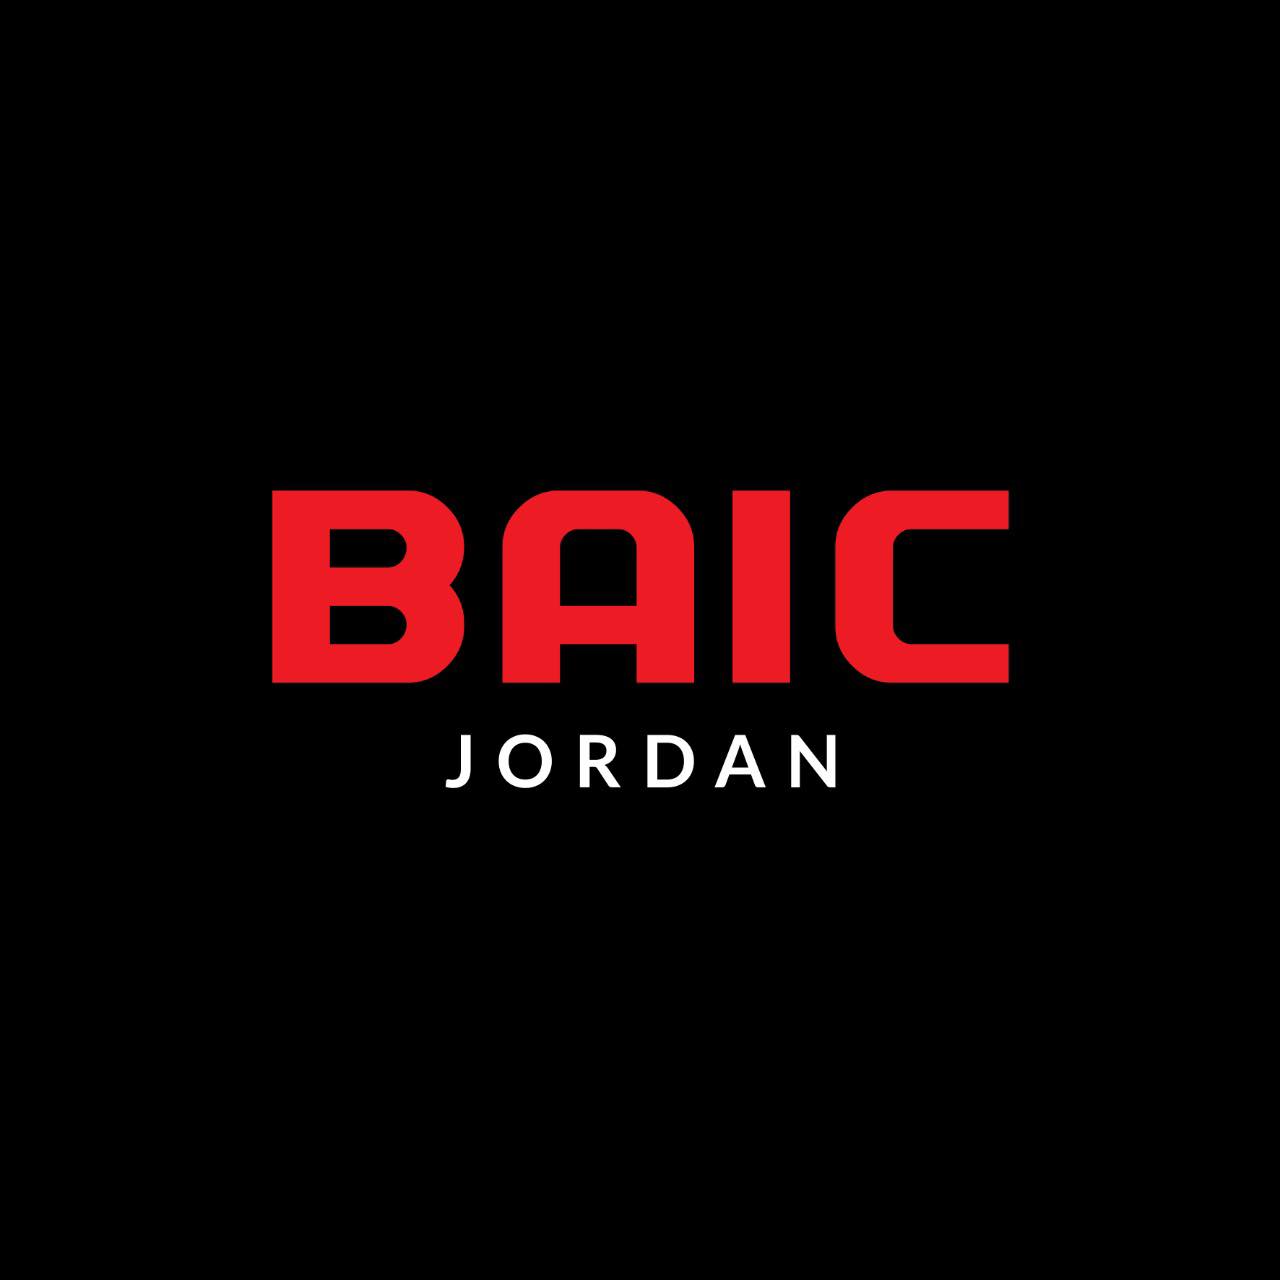 وكيل سيارات بايك BAIC في الاردن شركة مللوك وشركاه للتجارة